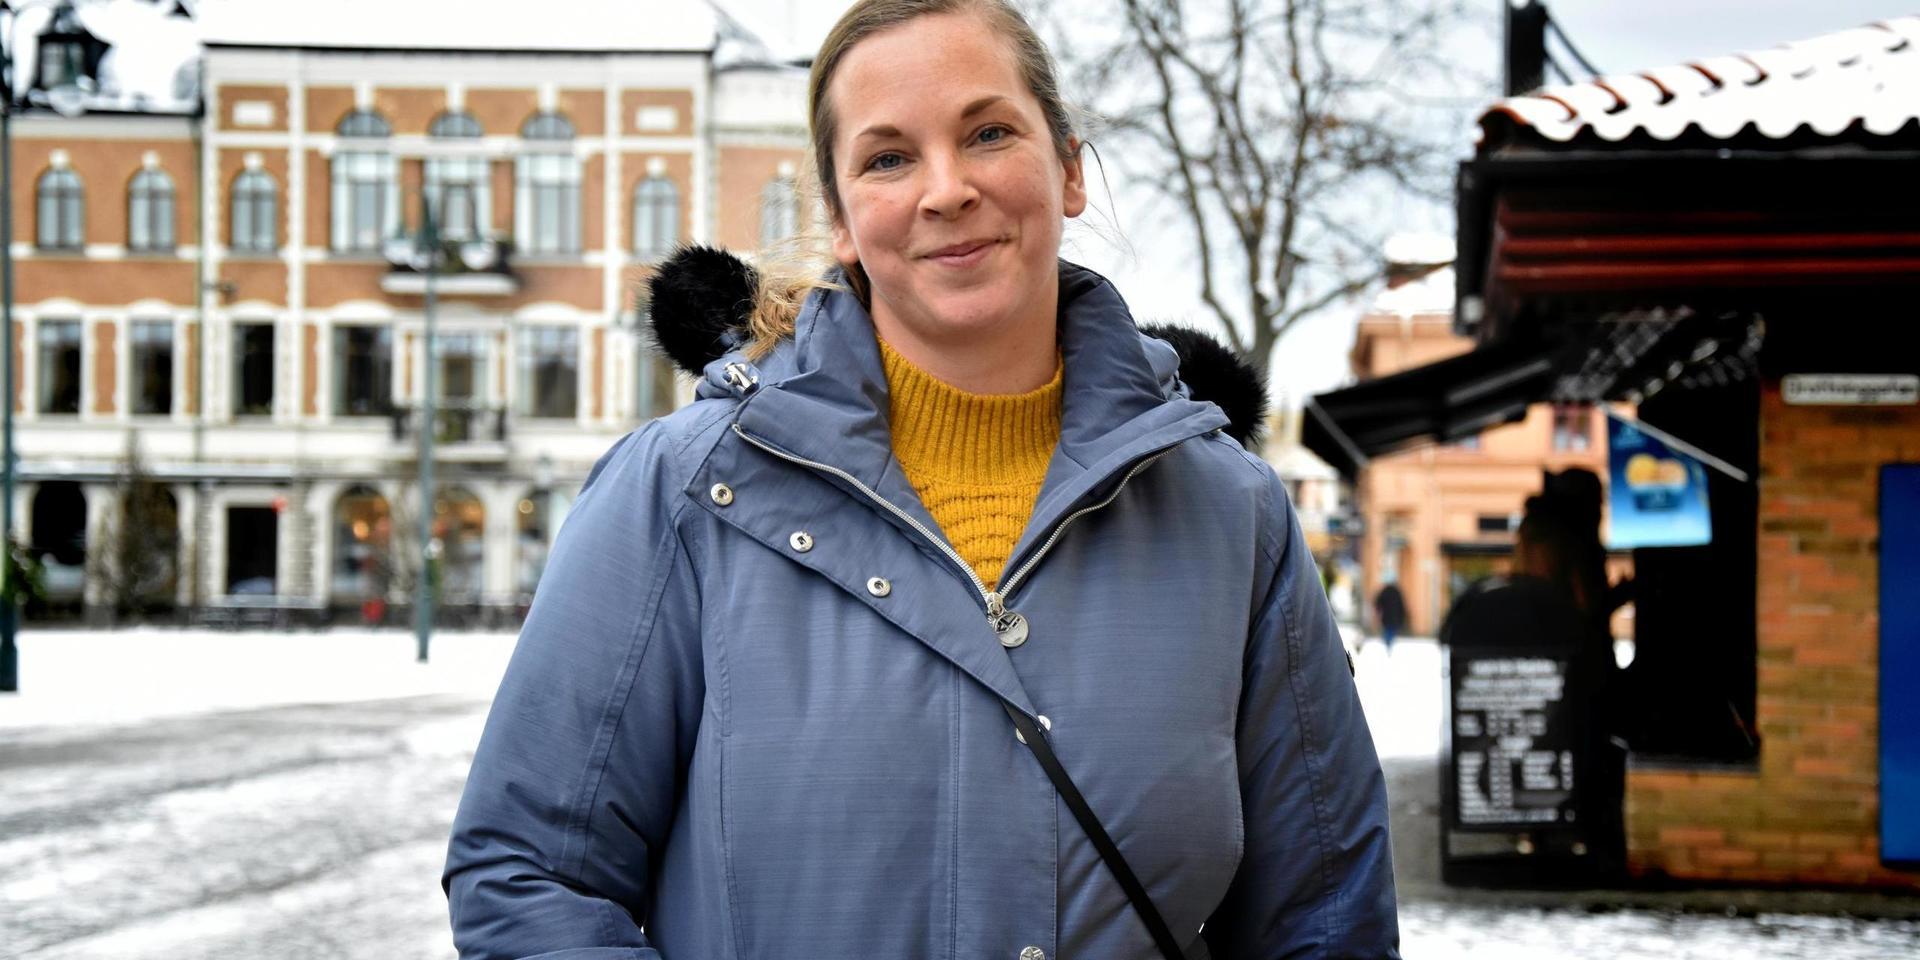 Lena Johansson, jobbar på stadsbyggnadskontoret, Varberg. Har du lyckats hålla ett nyårslöfte någon gång?